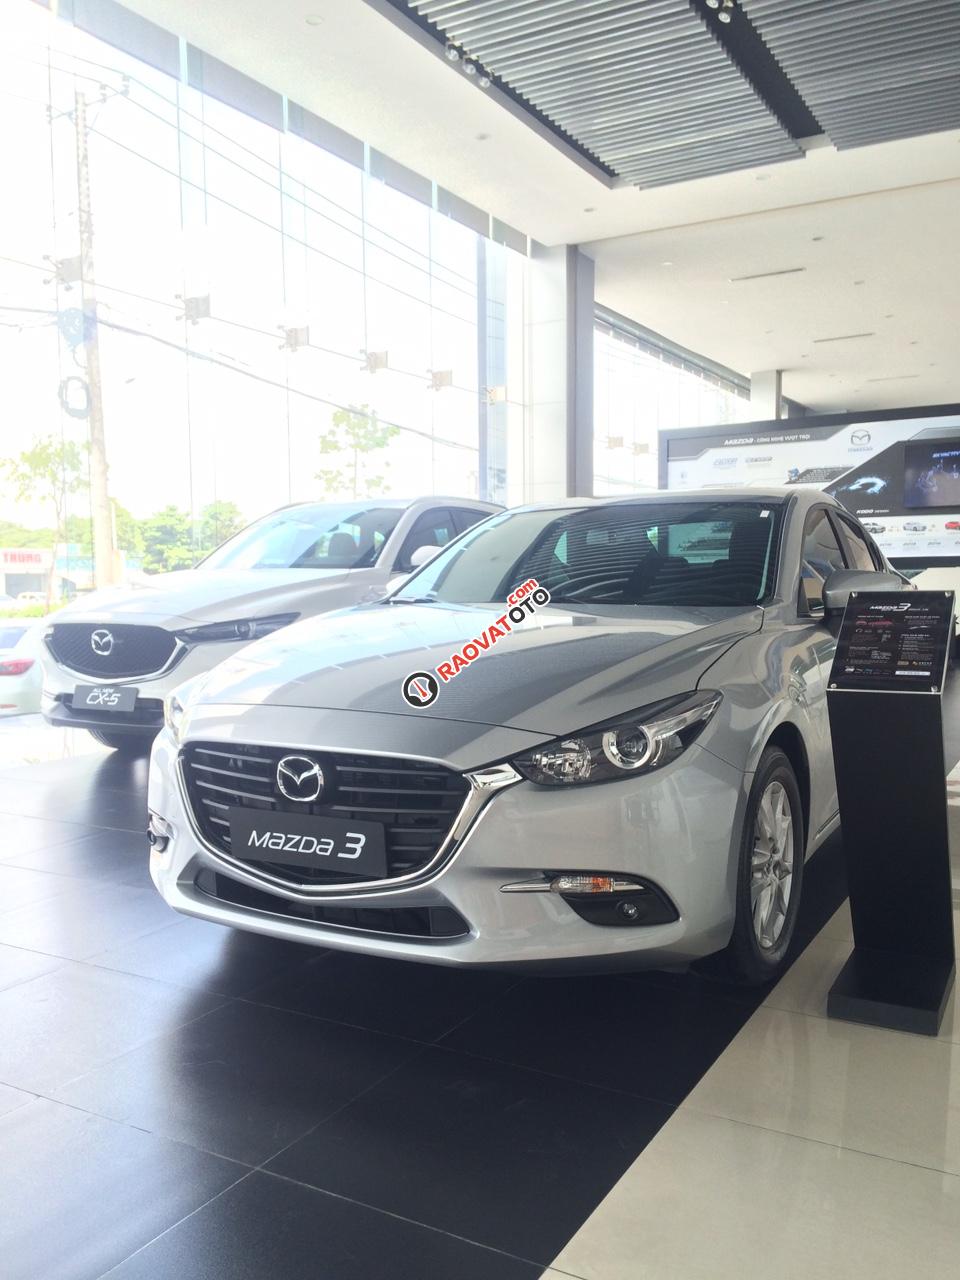 Bán Mazda 3 xe gia đình, giảm thêm 25 triệu, 169 triệu lấy xe lăn bánh, lãi suất ưu đãi, LH Nhung 0907148849-4